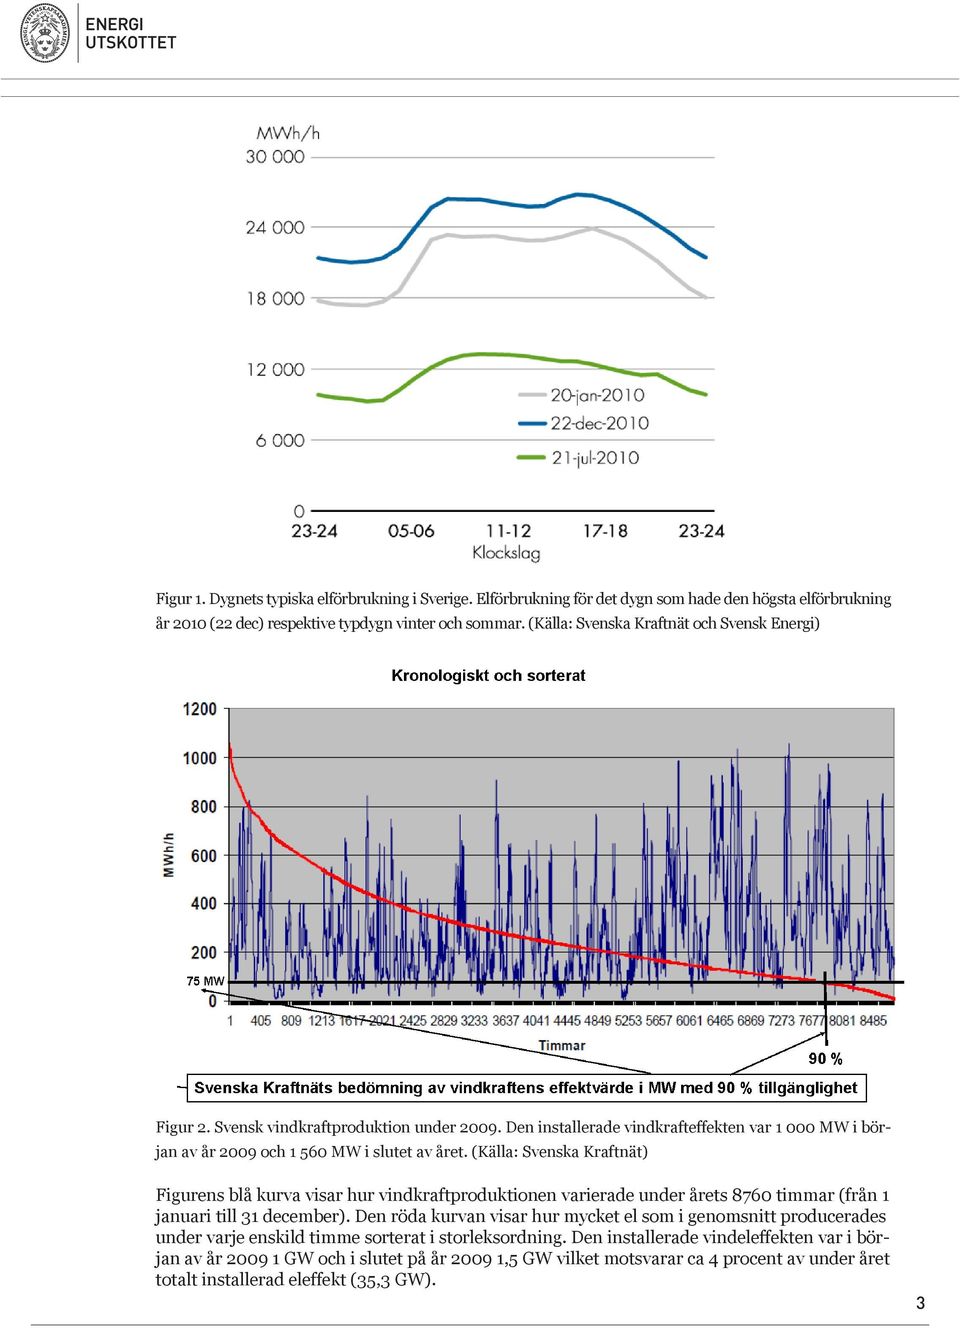 (Källa: Svenska Kraftnät) Figurens blå kurva visar hur vindkraftproduktionen varierade under årets 8760 timmar (från 1 januari till 31 december).